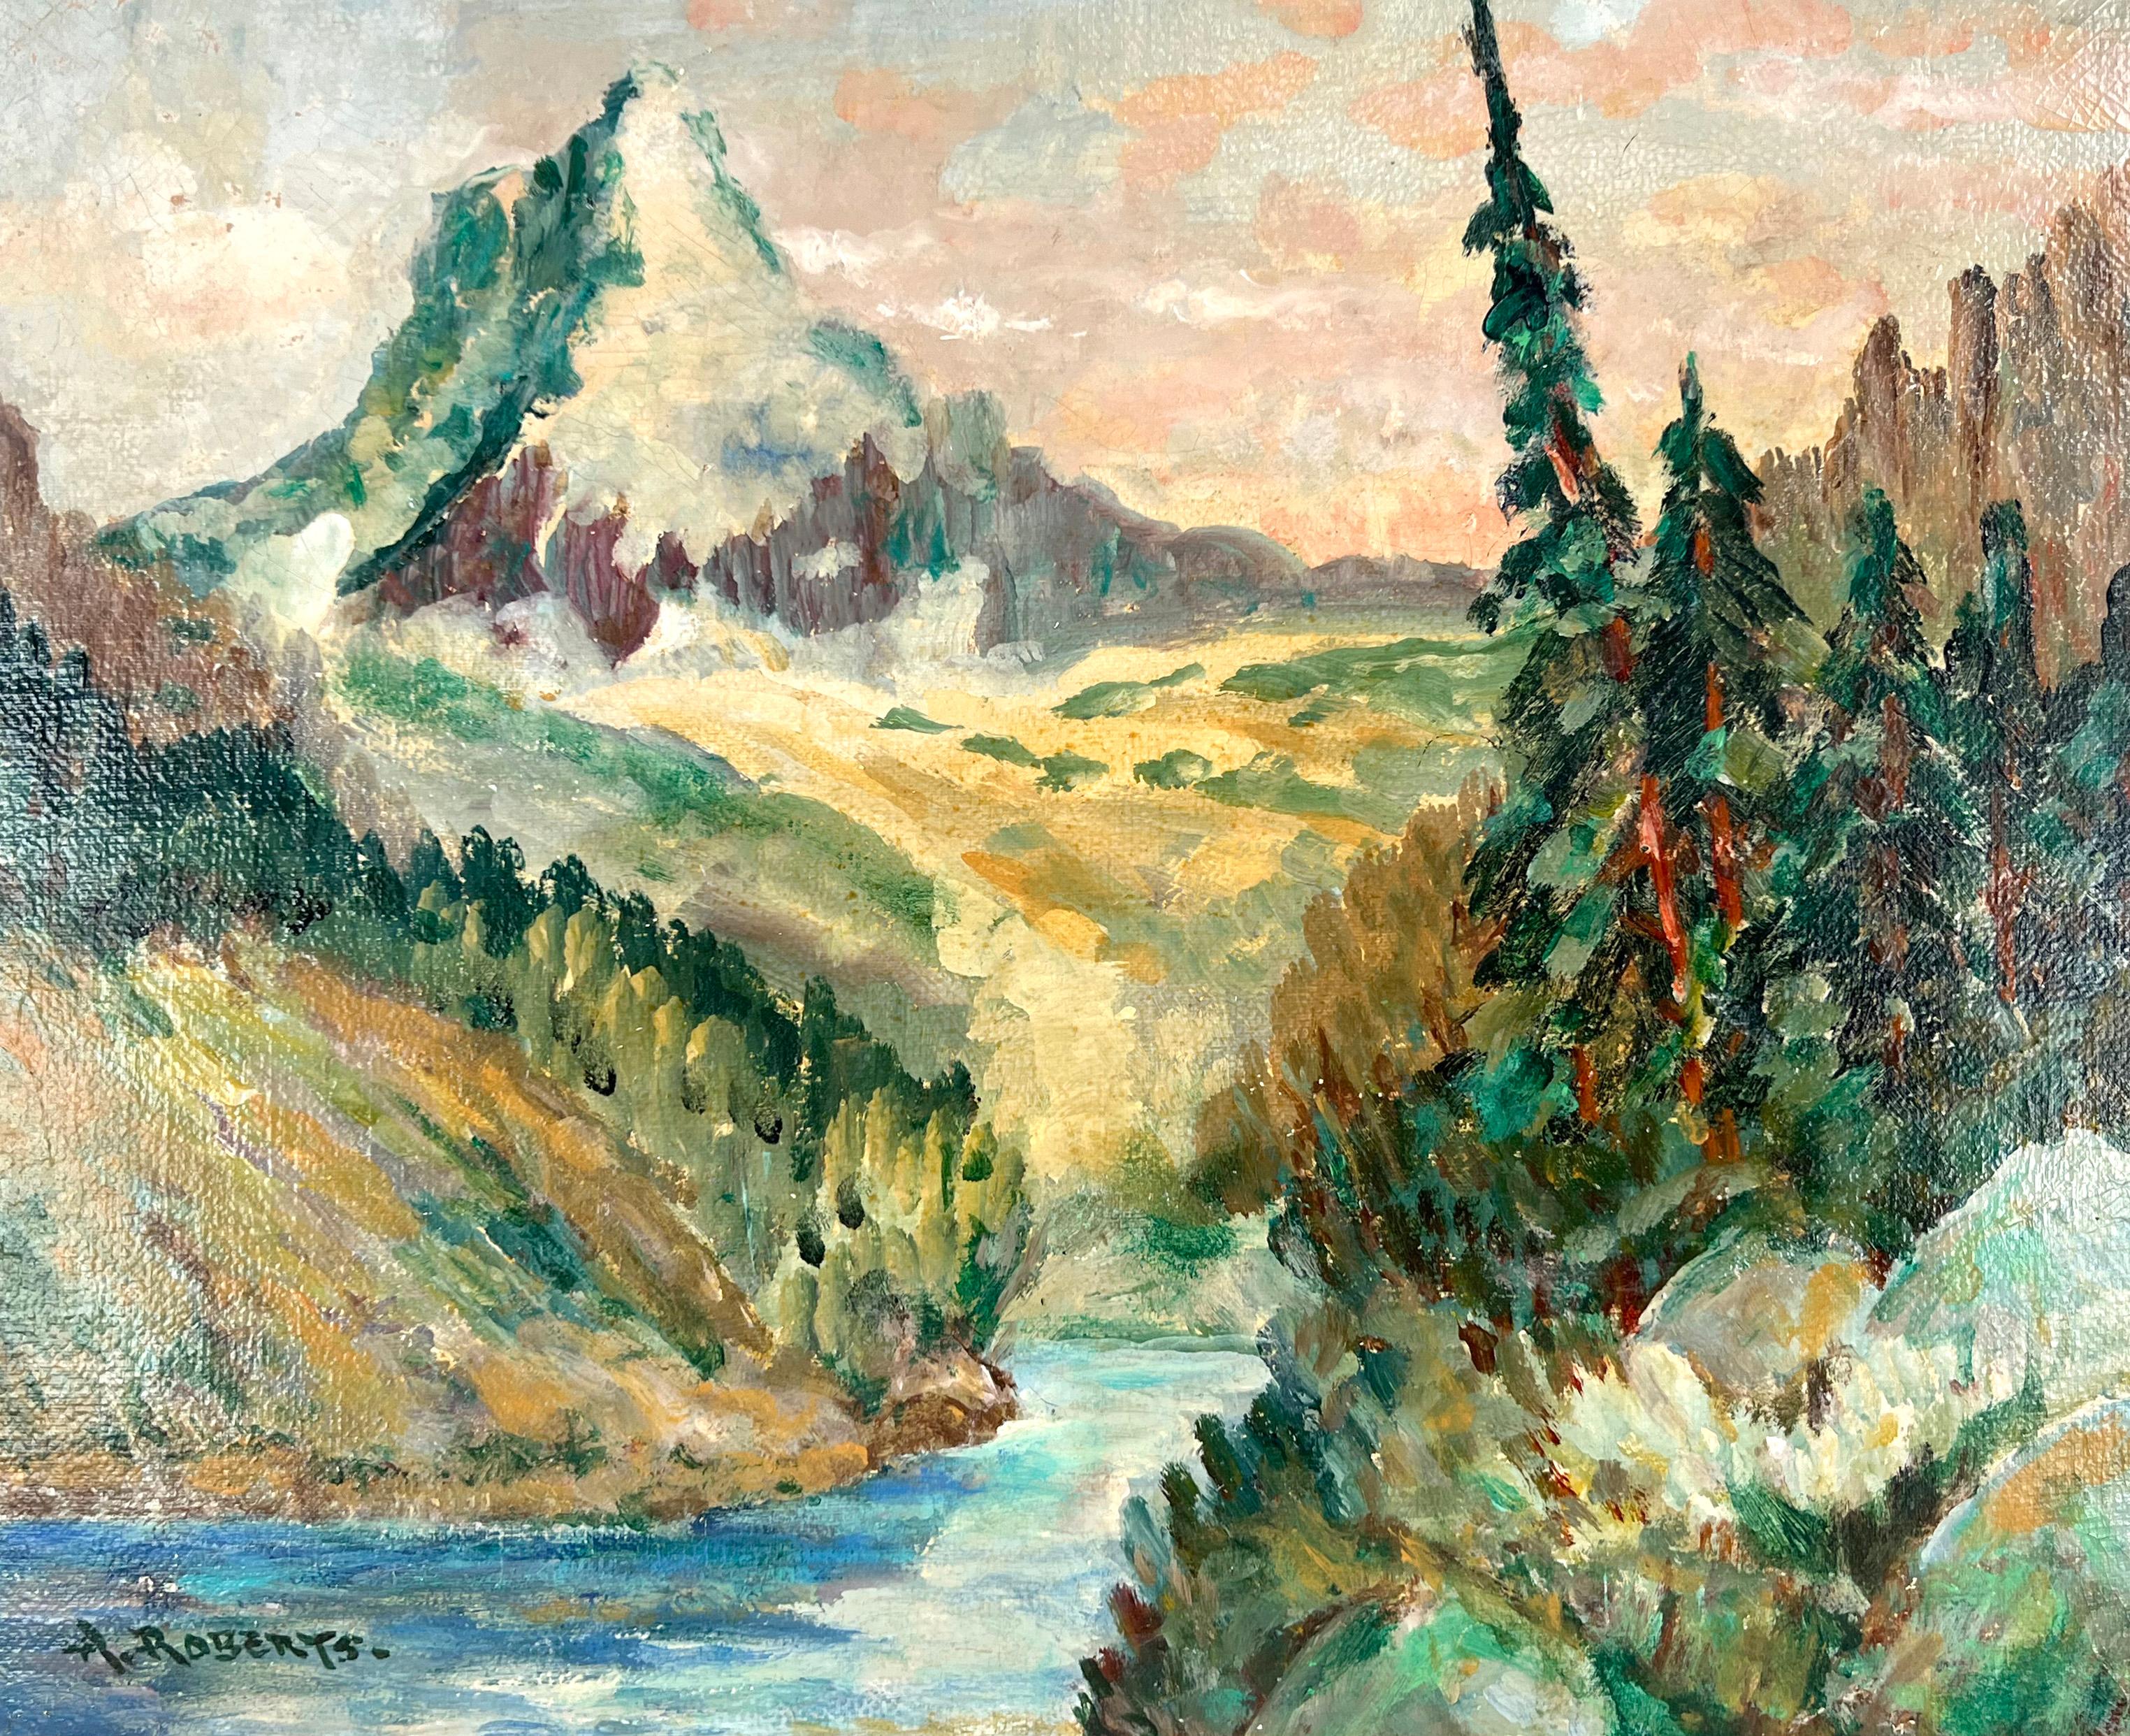 Sierra Peak California Mountain and Stream 1930er Jahre – Painting von Aaron Roberts